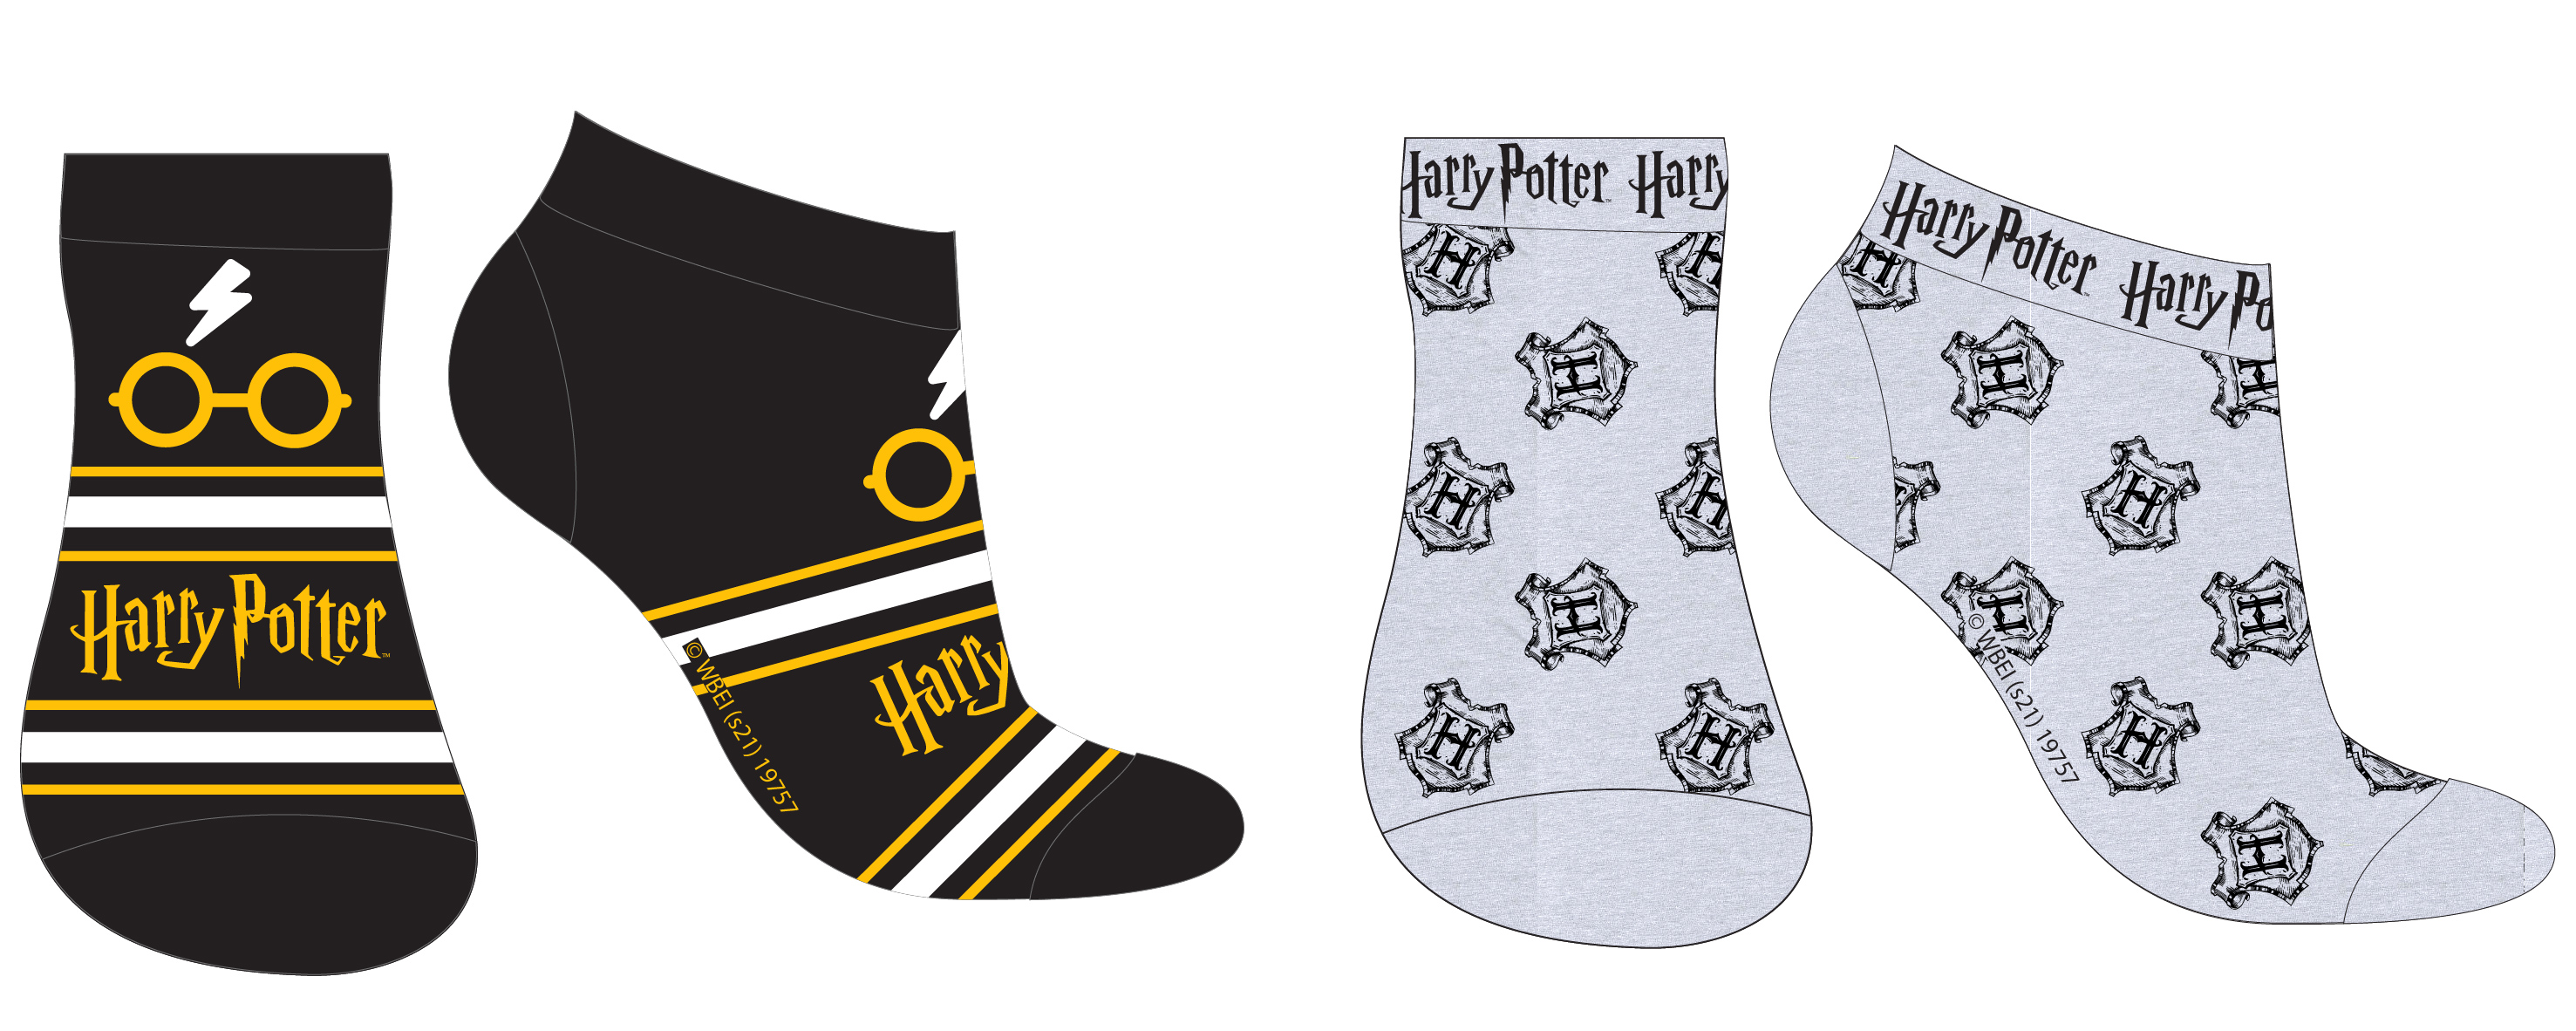 Harry Poter - licence Chlapecké kotníkové ponožky - Harry Potter 5234376, černá / šedá Barva: Mix barev, Velikost: 31-34